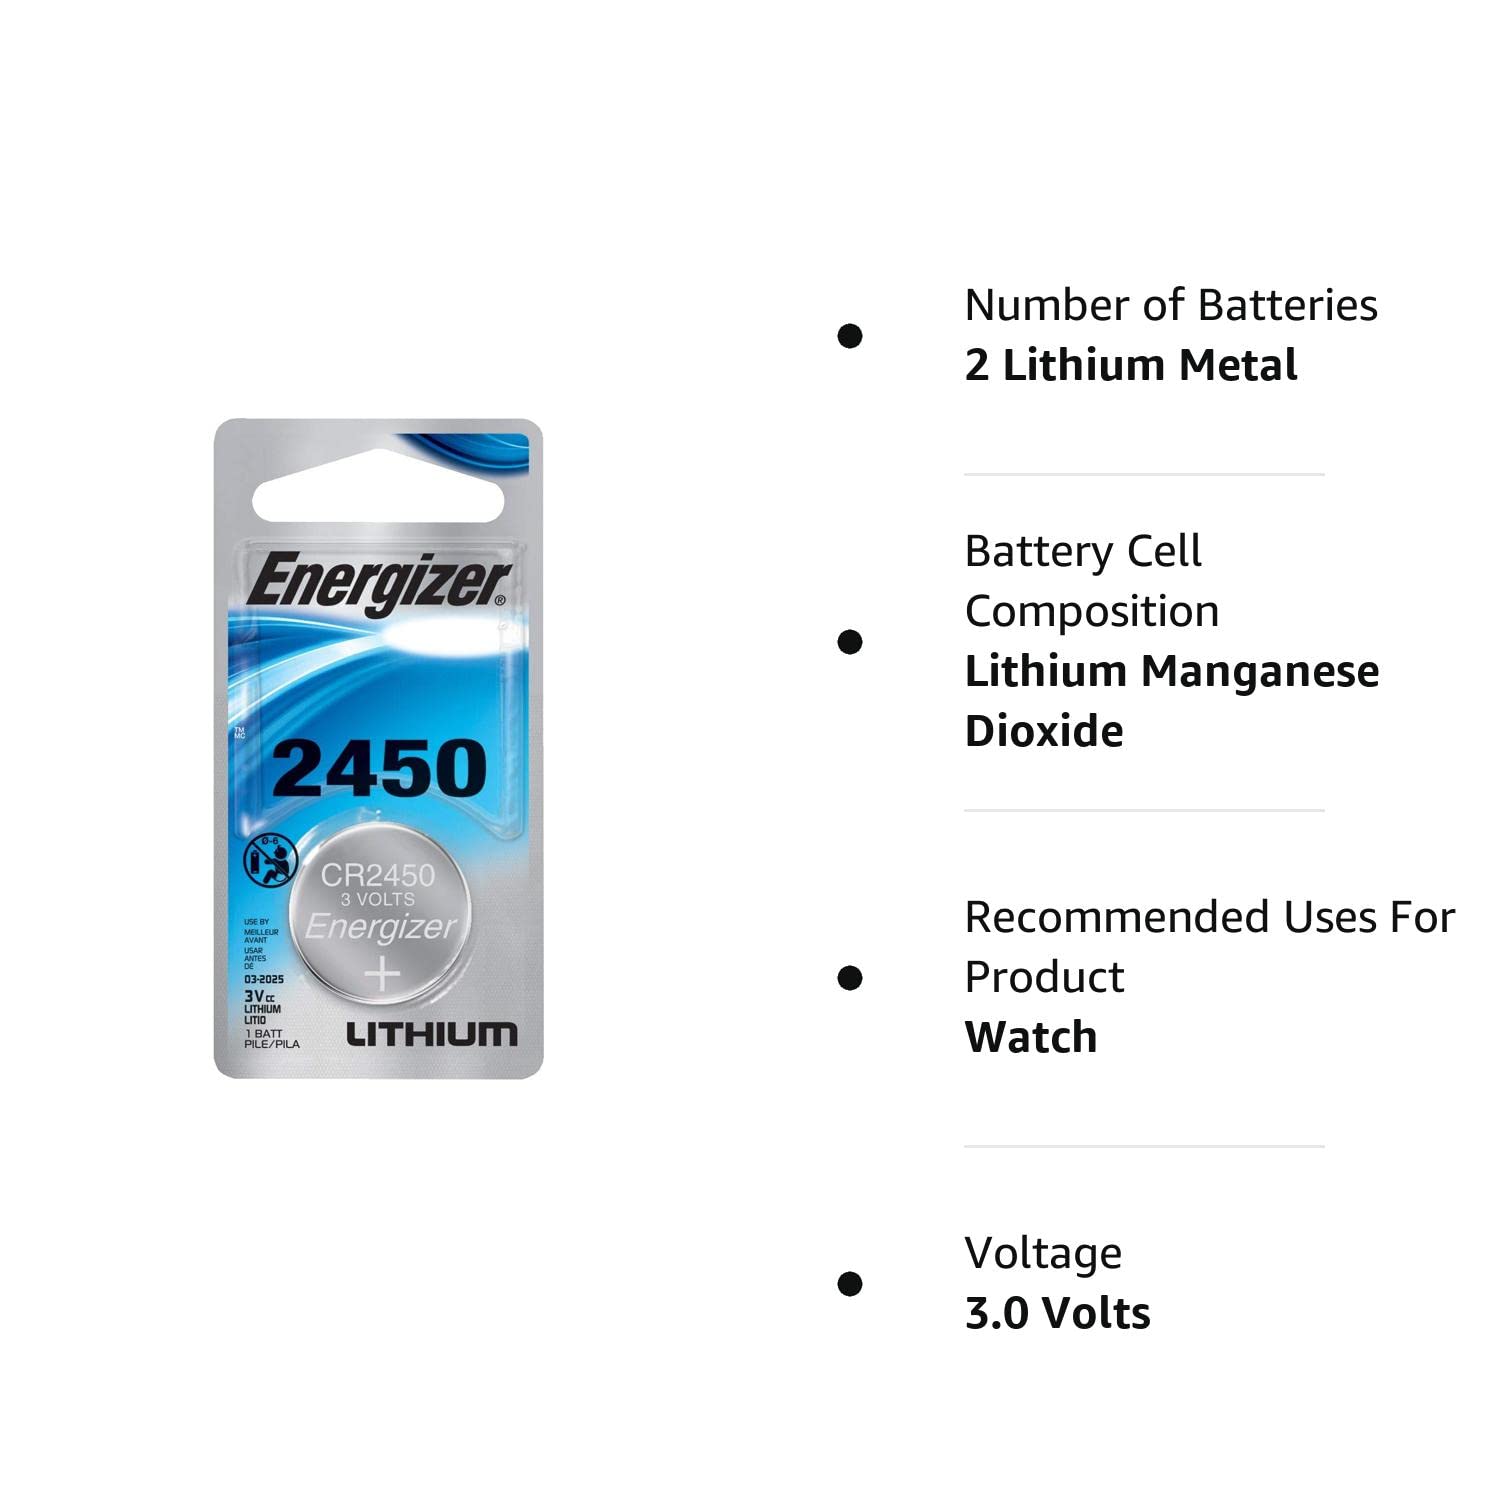 Energizer CR2450 Lithium Battery, 3v ECR2450, 2 PK